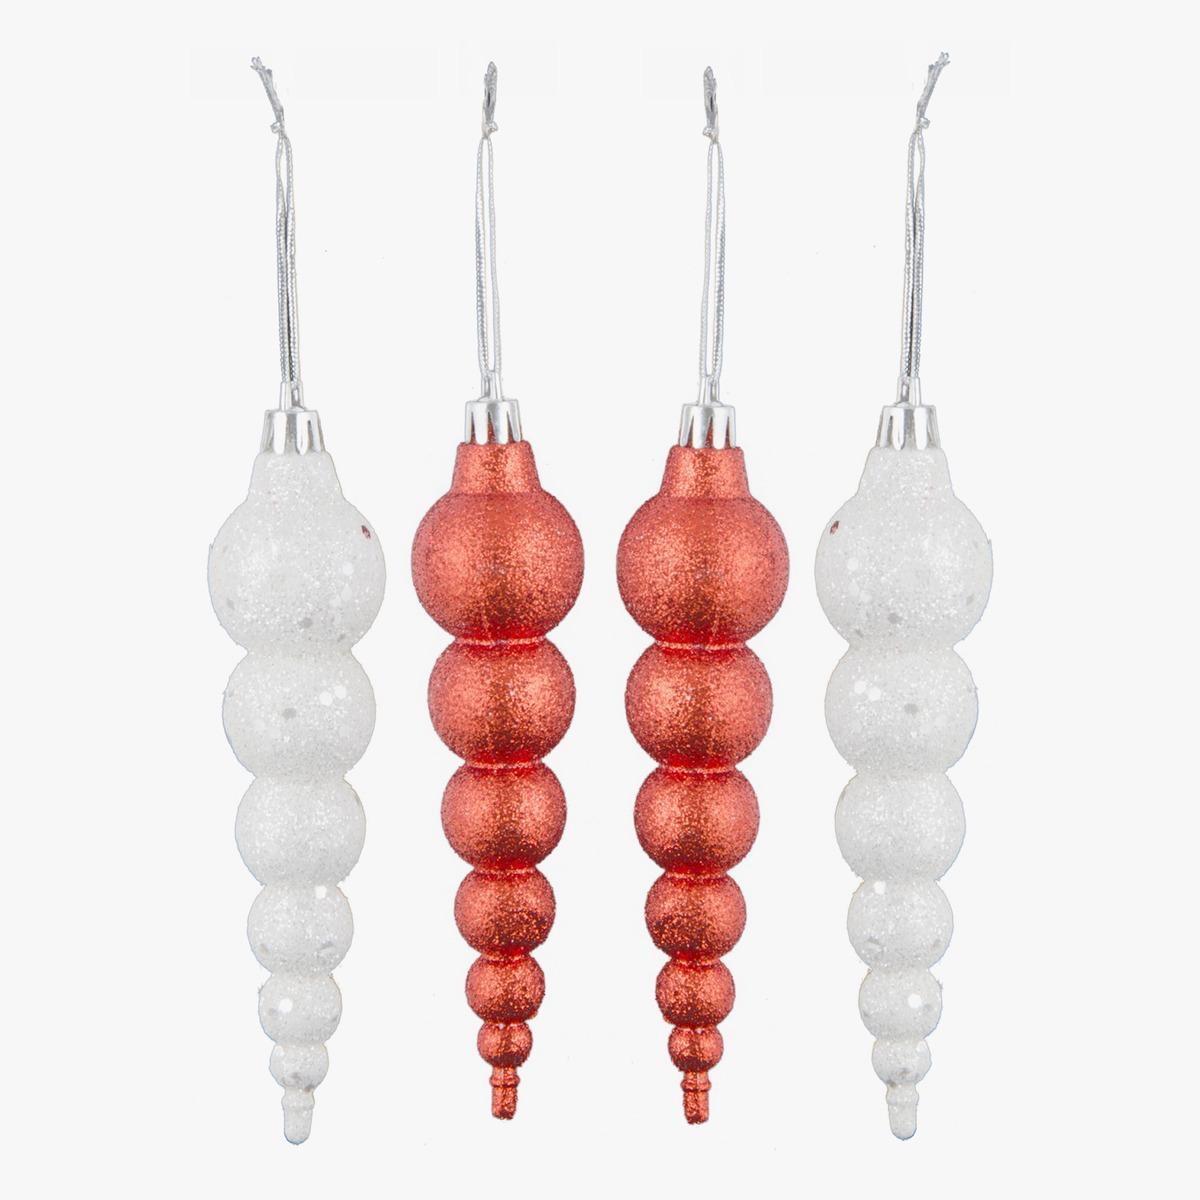 Lot de 4 suspensions stalactites boules - 10 cm - Rouge et blanc